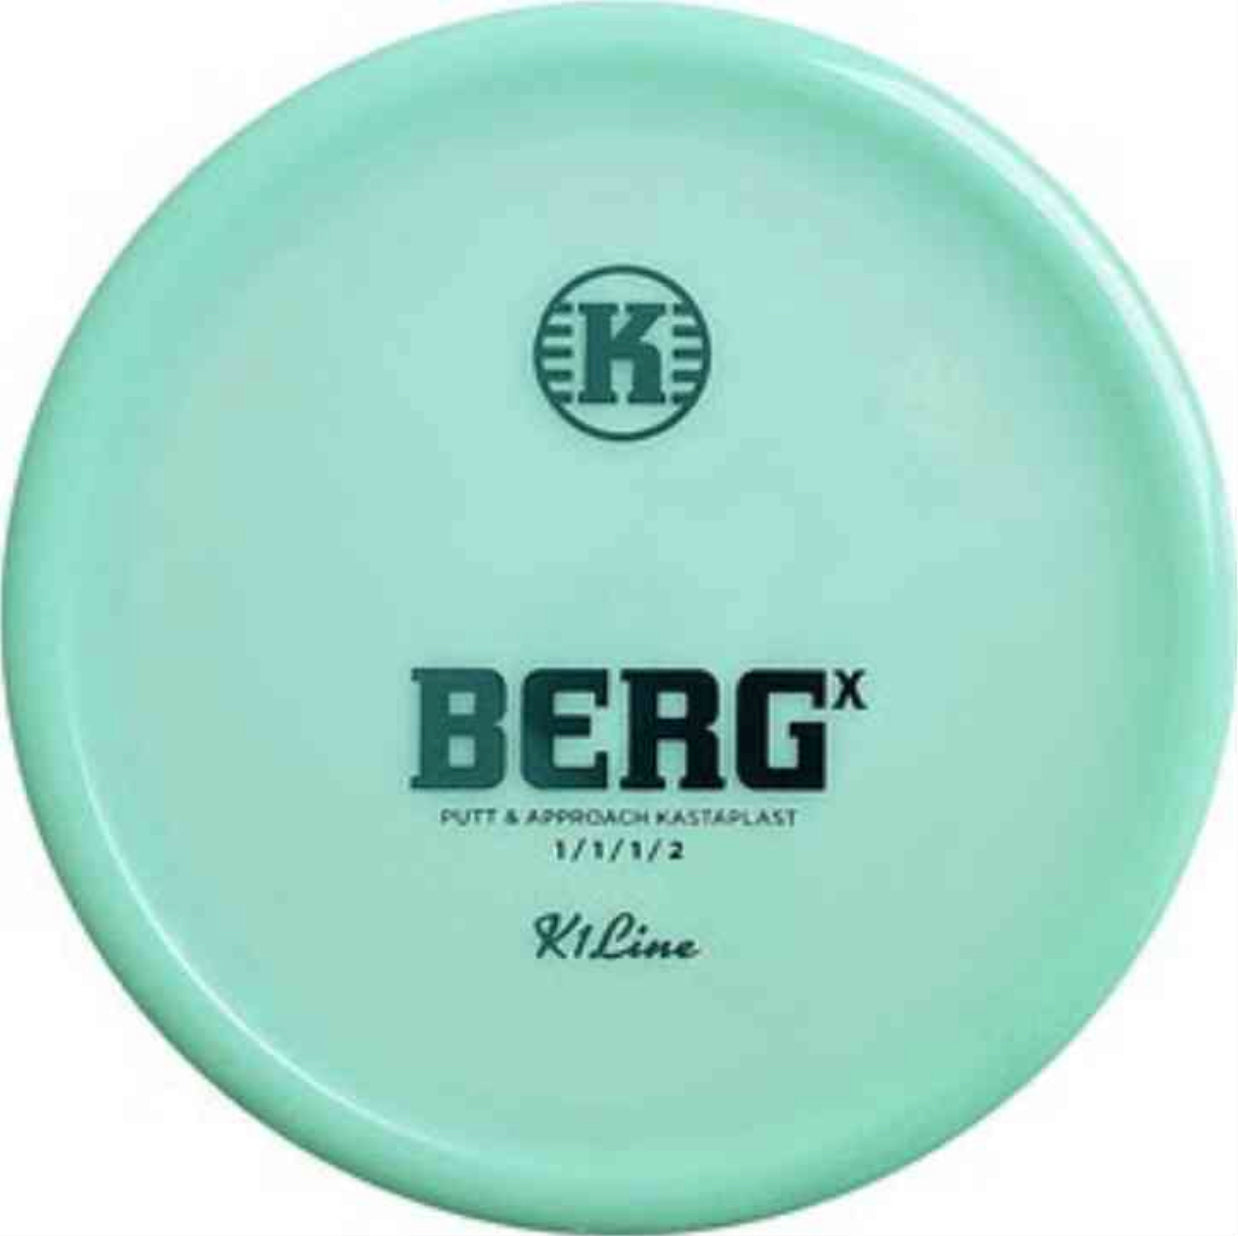 First Run Bergx! | Kastaplast | Disc Golf Disc | Putt & Approach